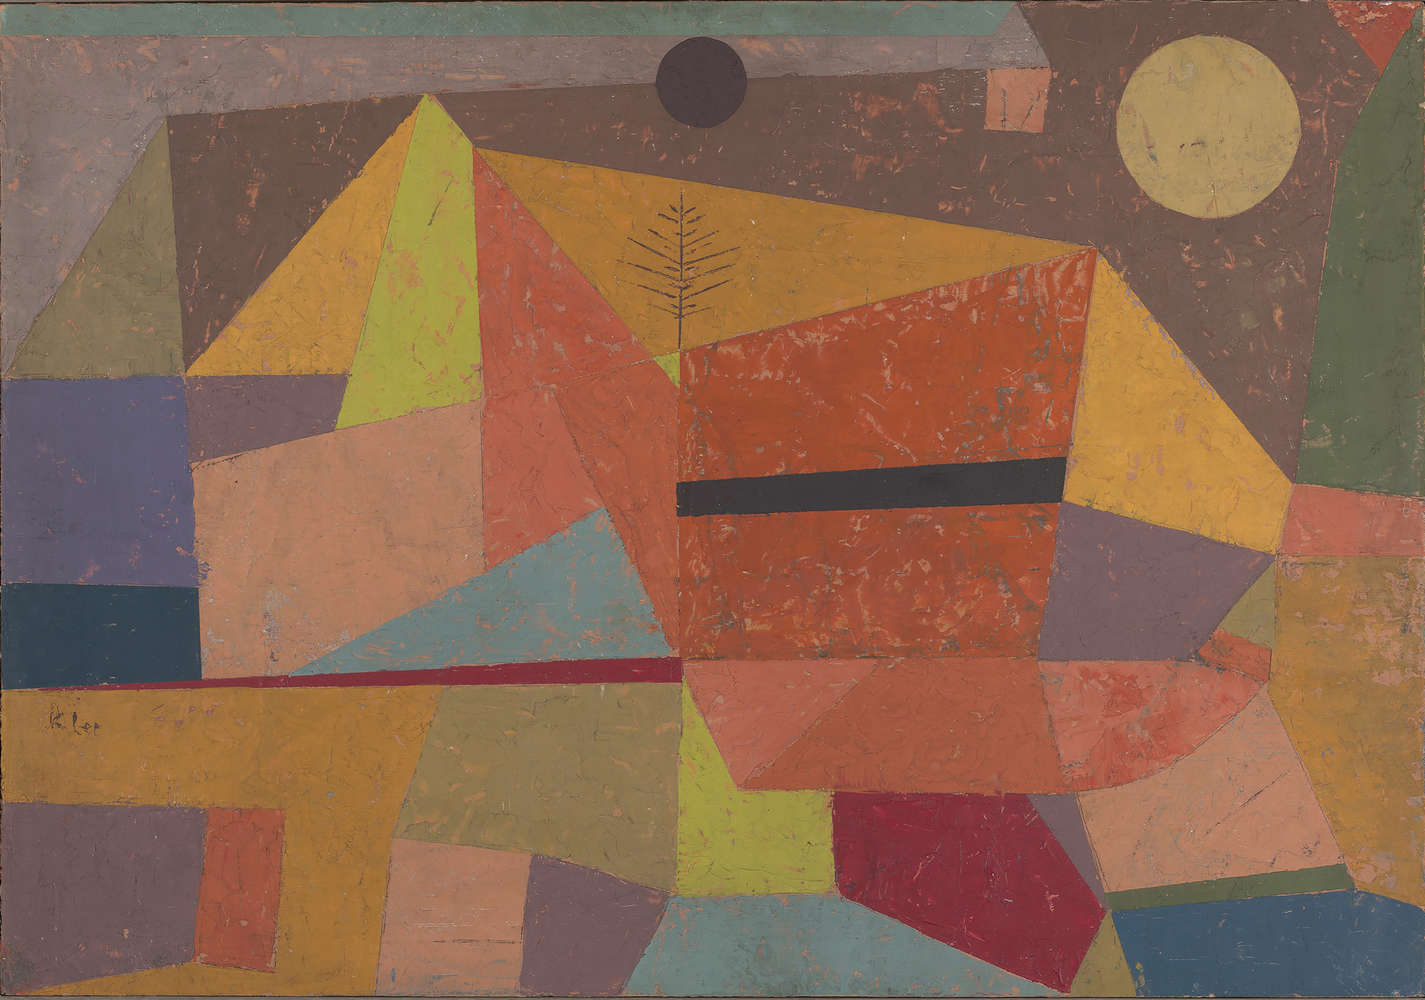             Papier peint panoramique "Paysage de montagne serein" de Paul Klee
        